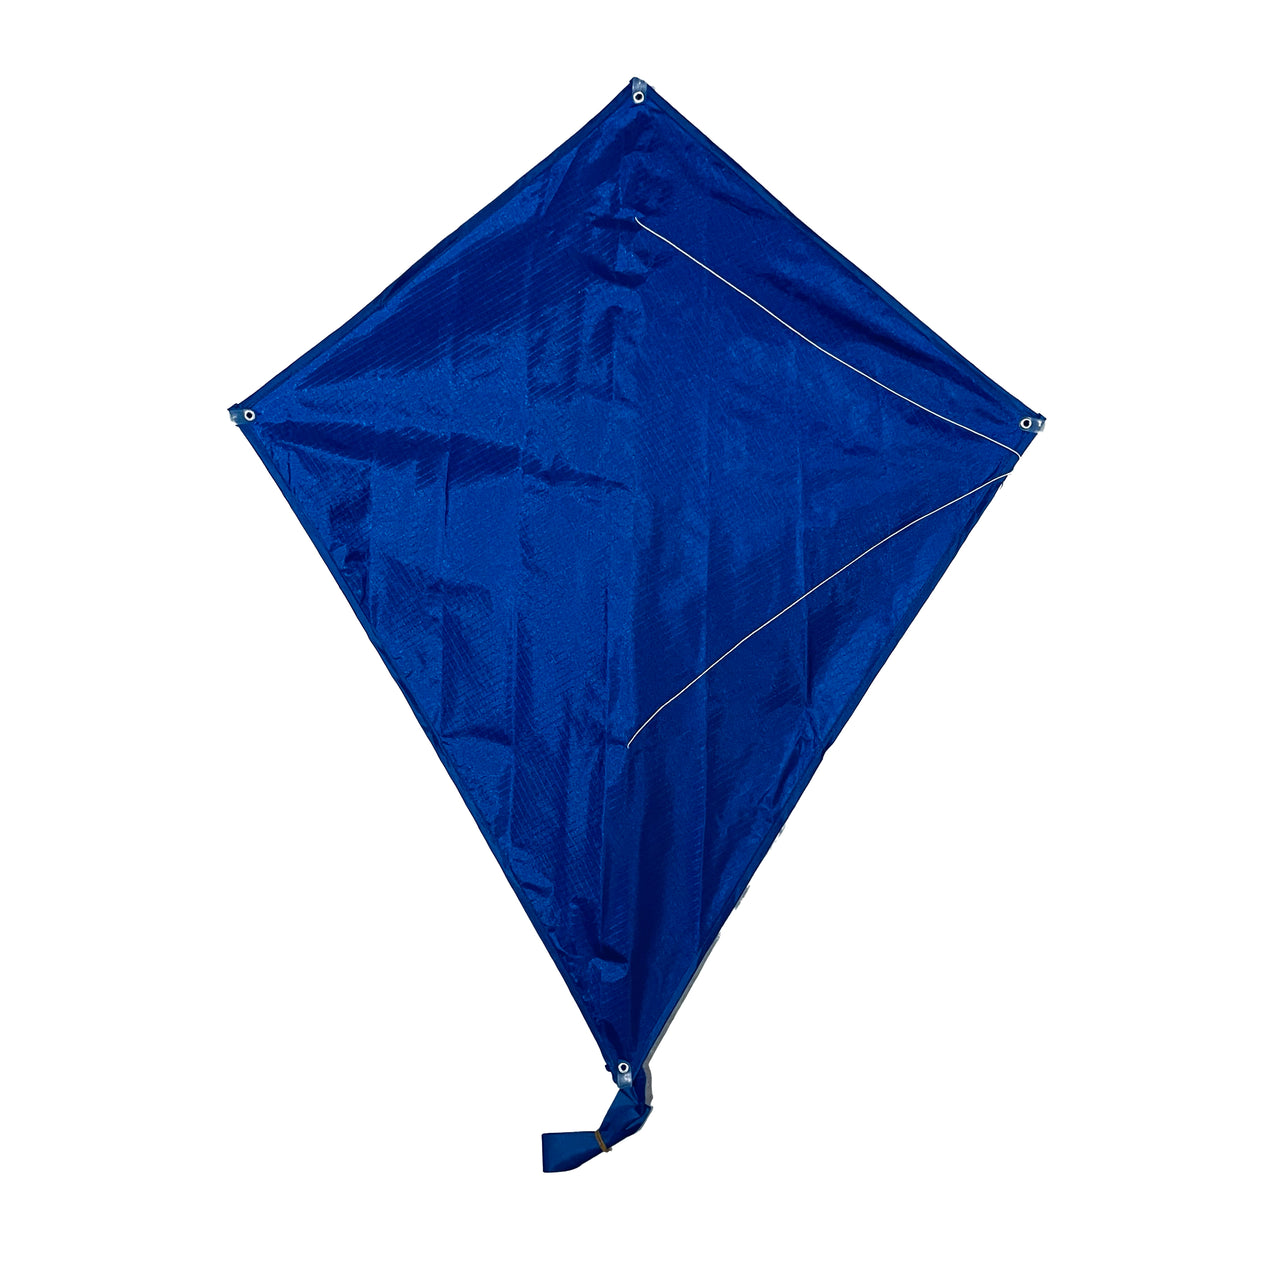 80cm Diamond Kite (Per Piece)